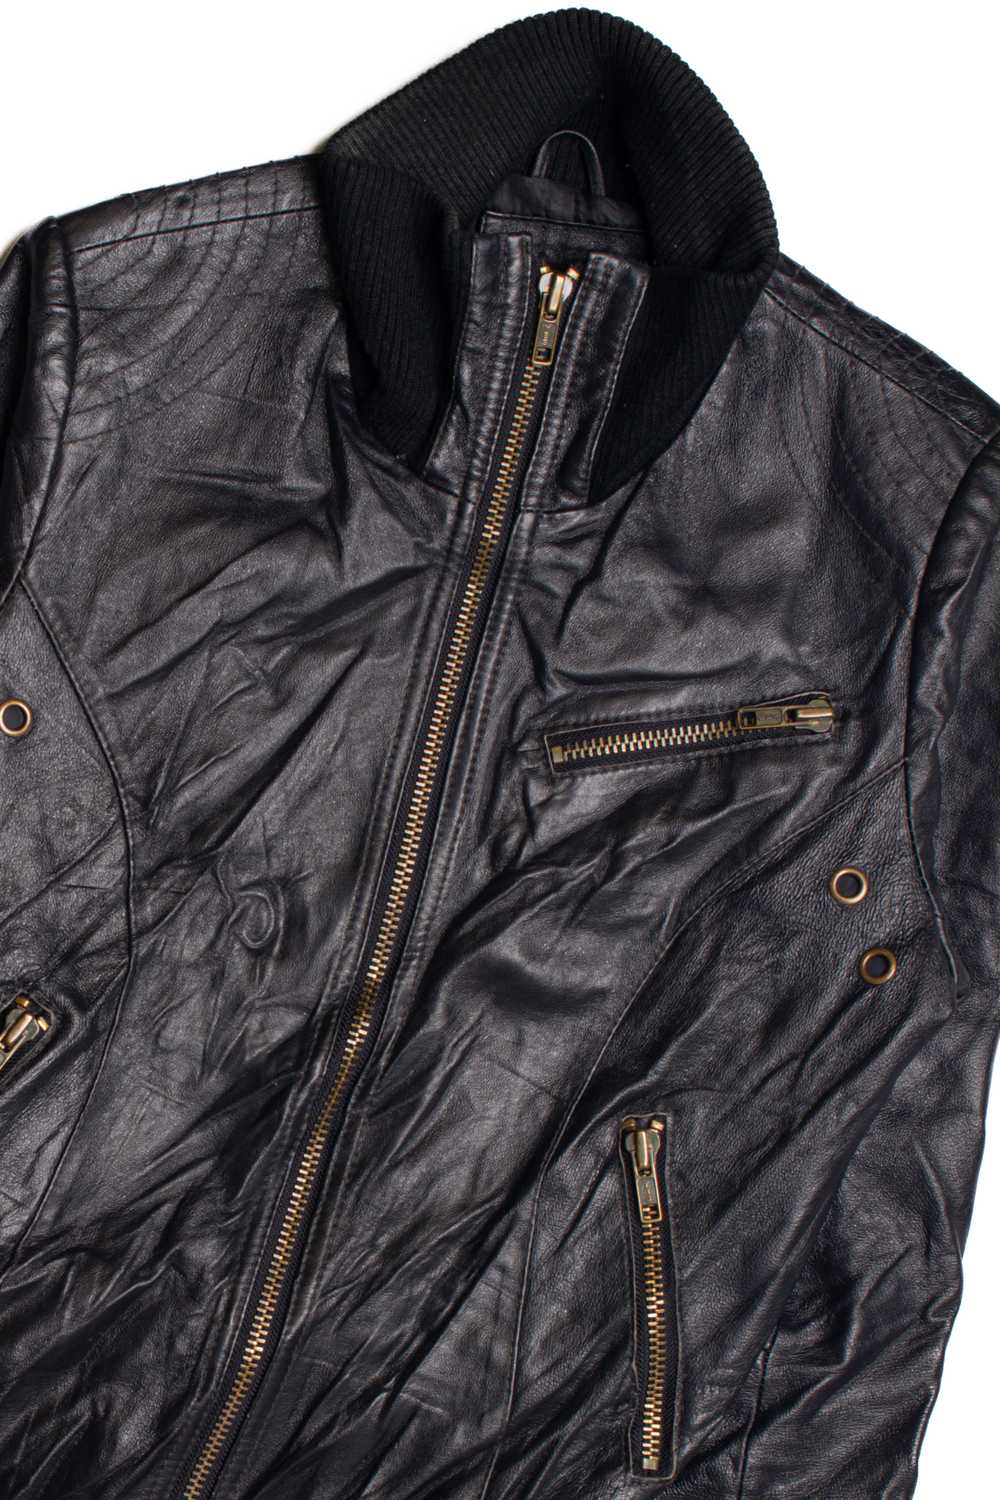 Black Leather Motorcycle Jacket 374 - image 2